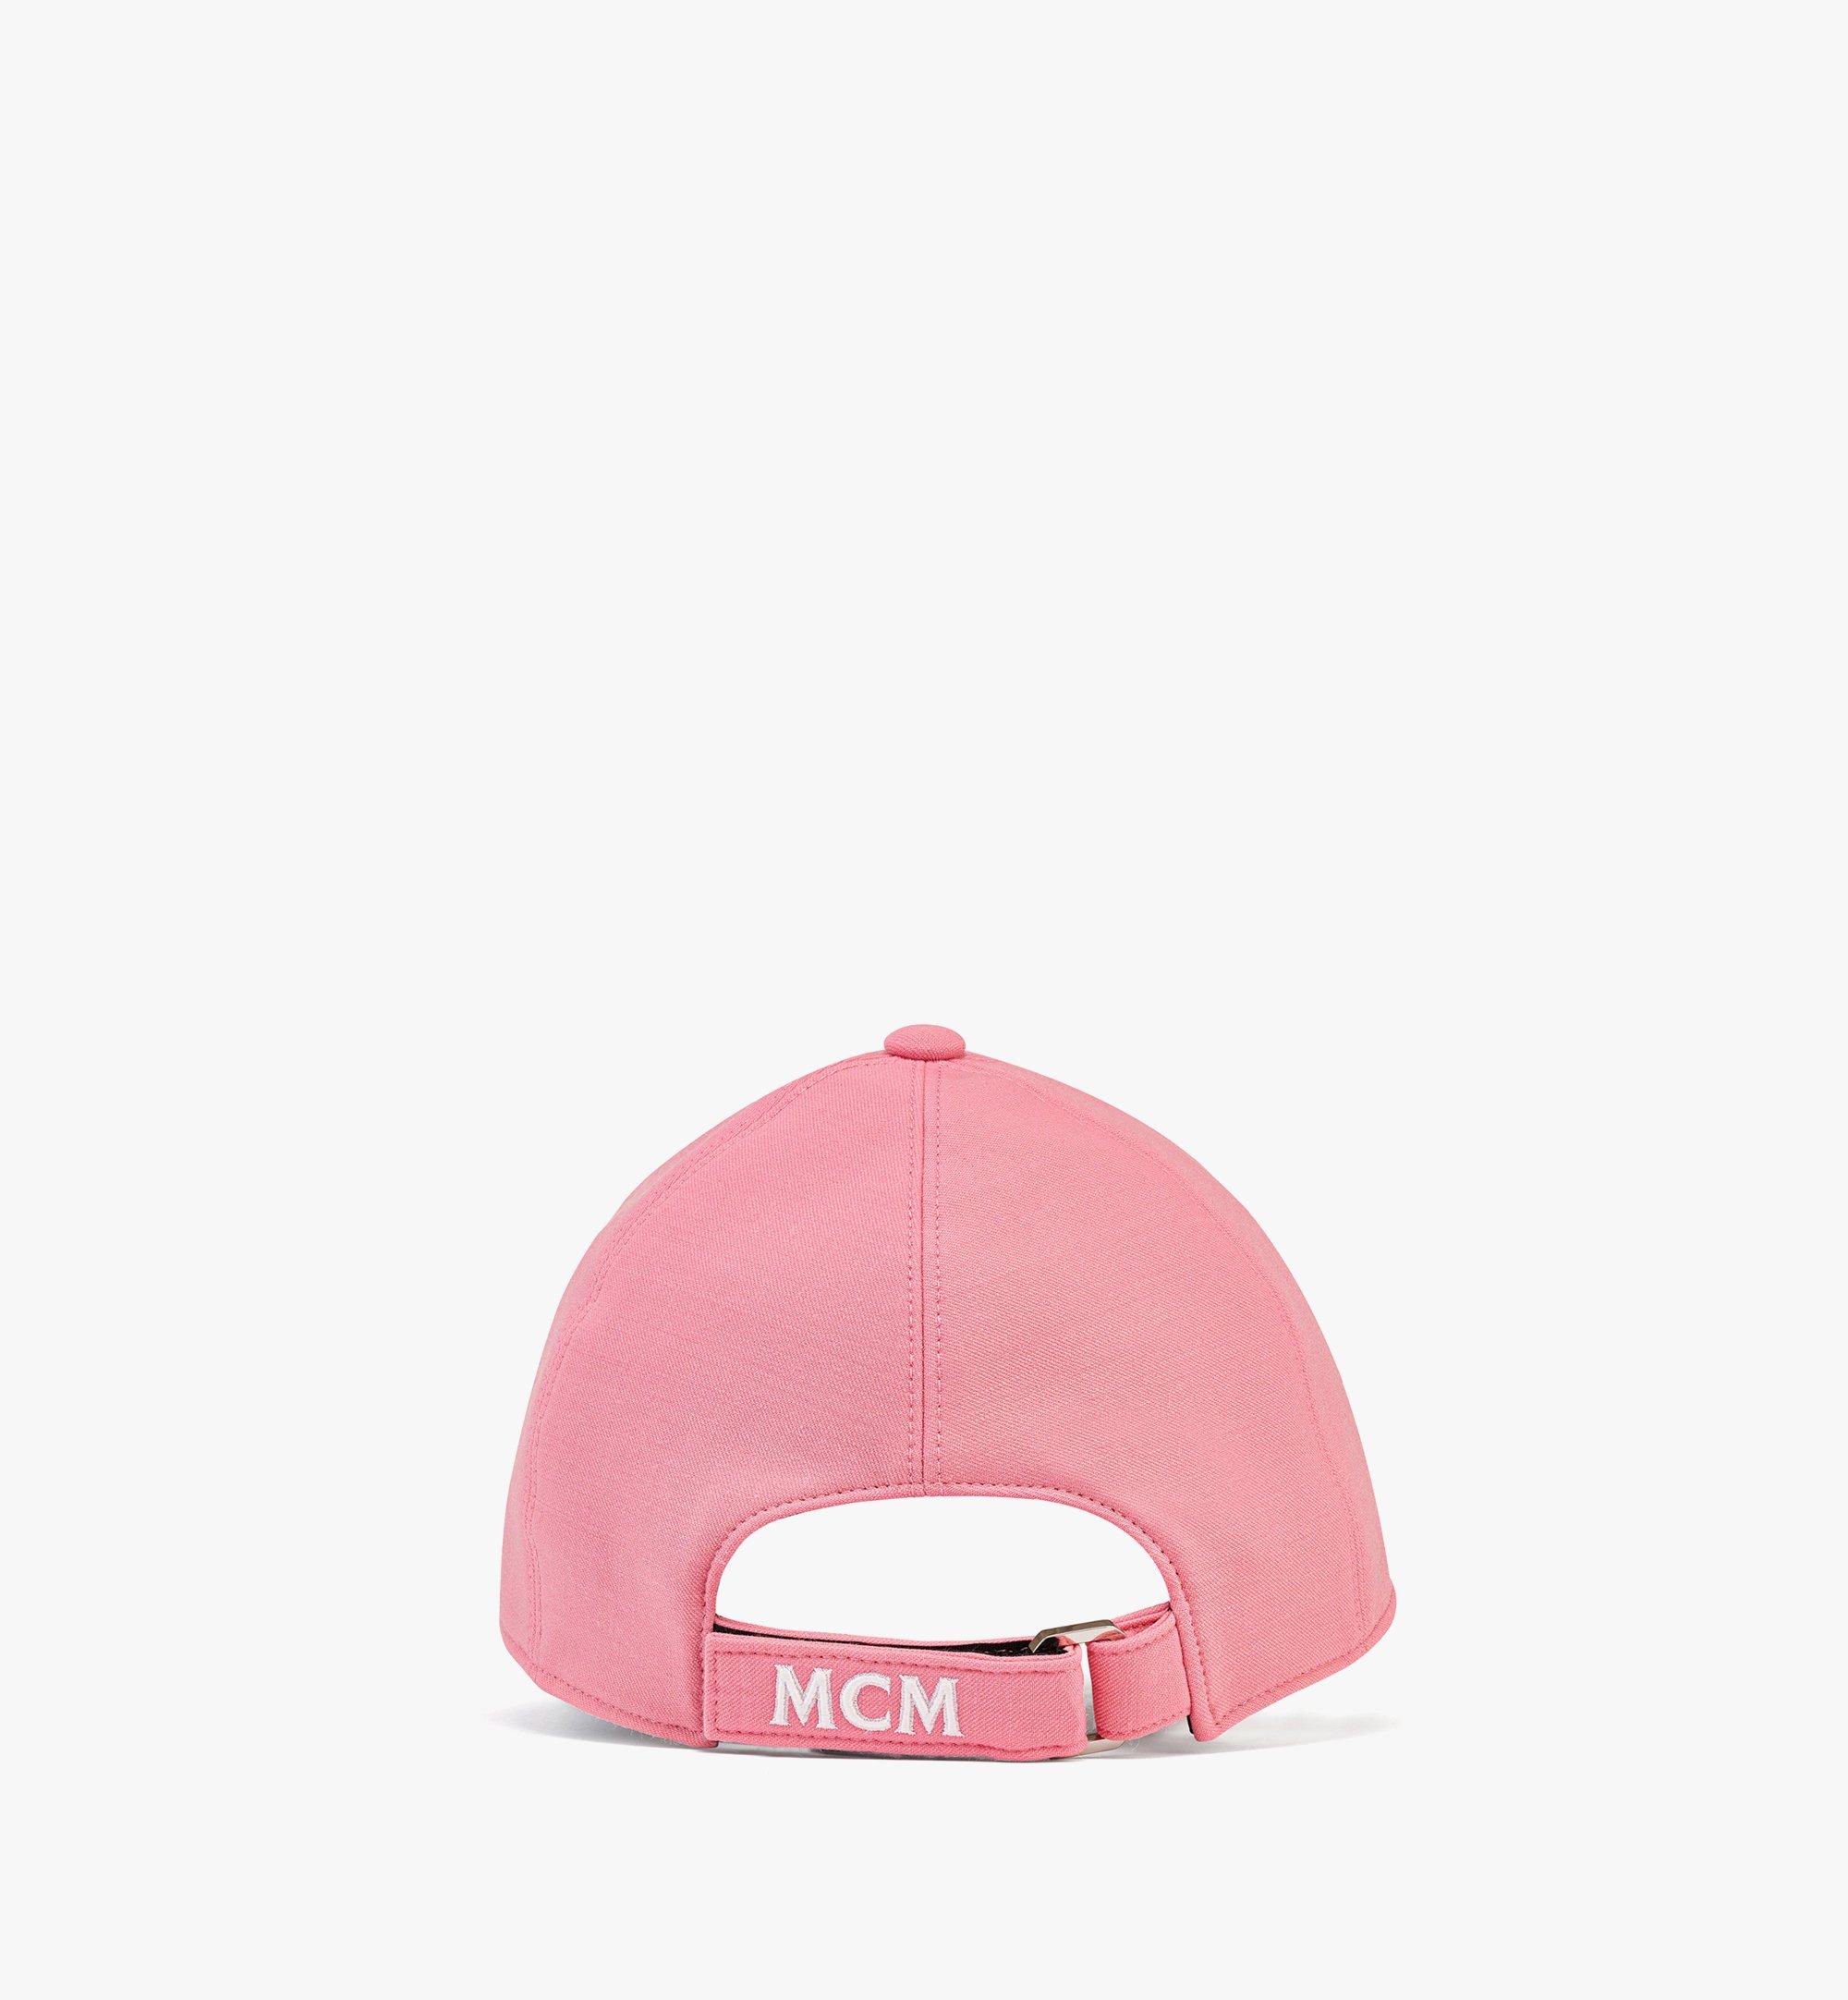 MCM Jacquard-Kappe mit Cubic-Logo Pink MECCSCK03QV001 Noch mehr sehen 1